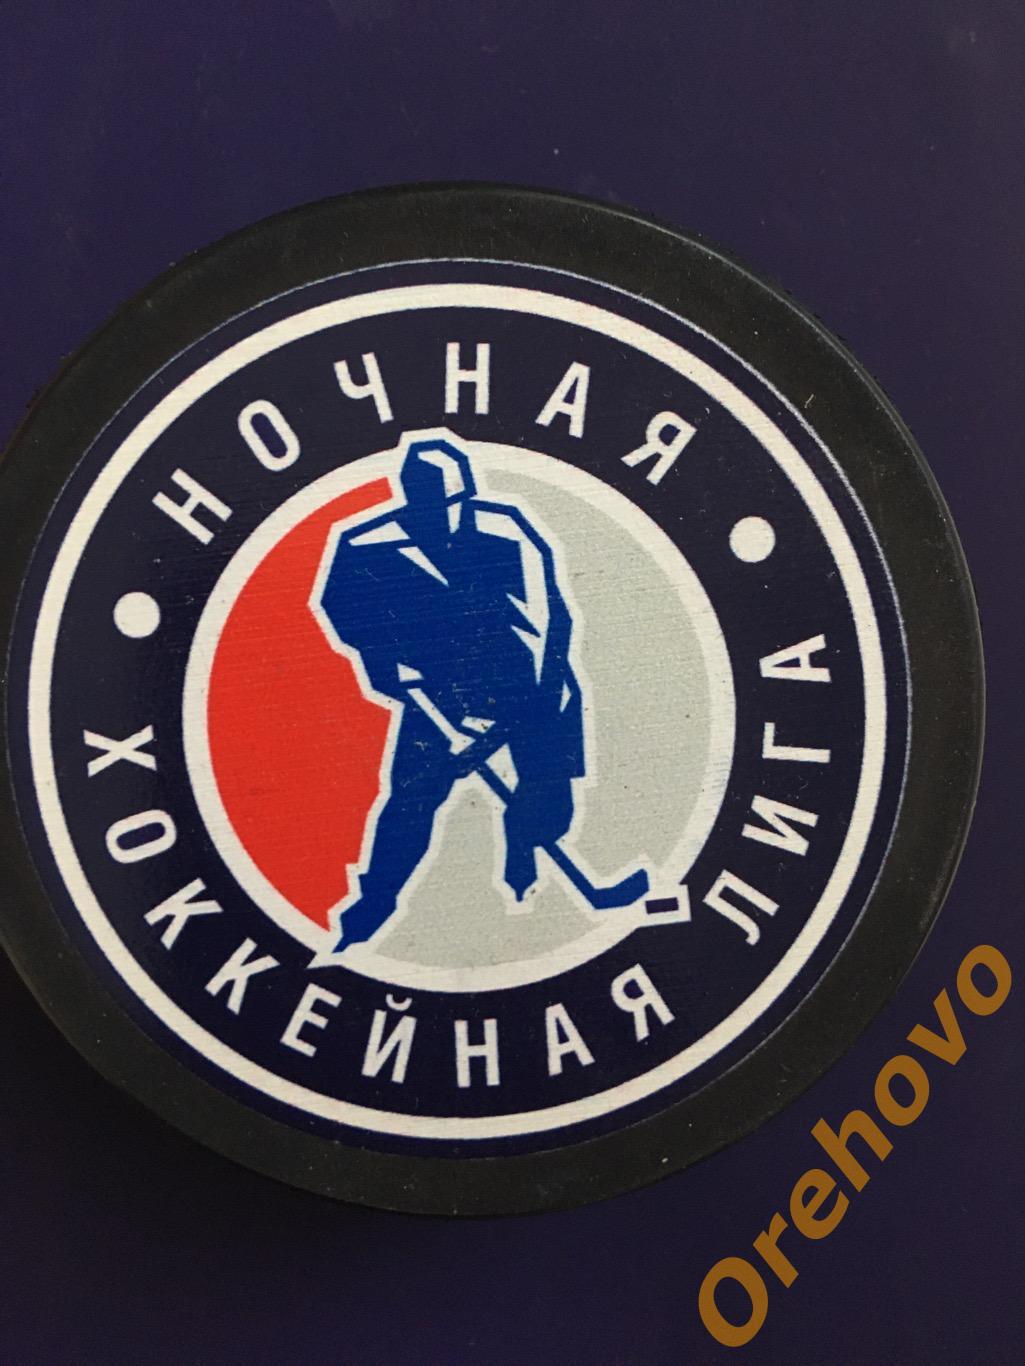 Шайба Ночная хоккейная Лига сезон 2014/2015 (сувенир)